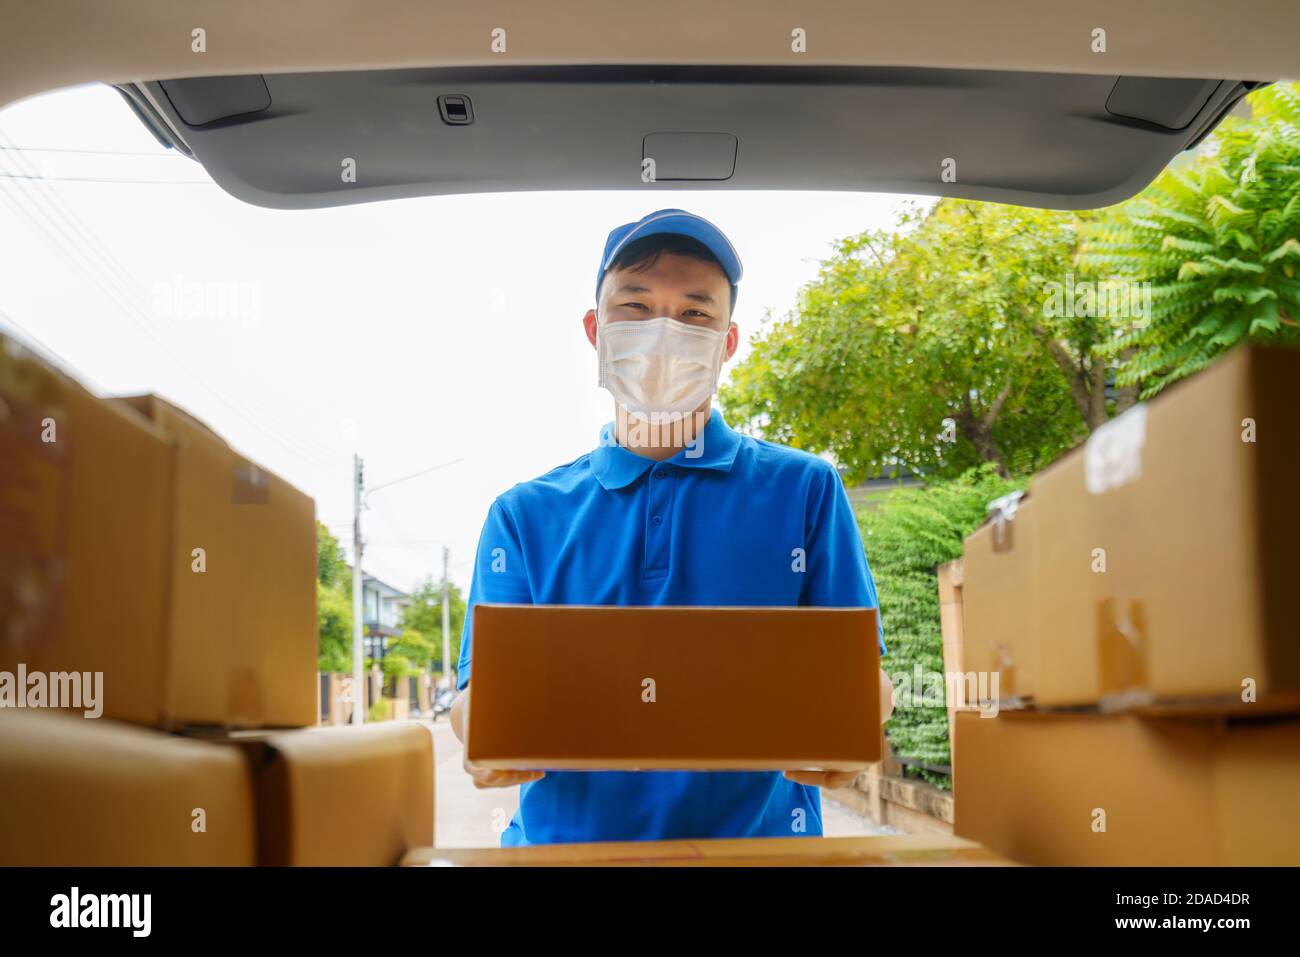 Asian Delivery man Services Kurier arbeitet mit Kartons auf van während der Coronavirus (COVID-19) Pandemie, Kurier trägt medizinische Maske und l Stockfoto